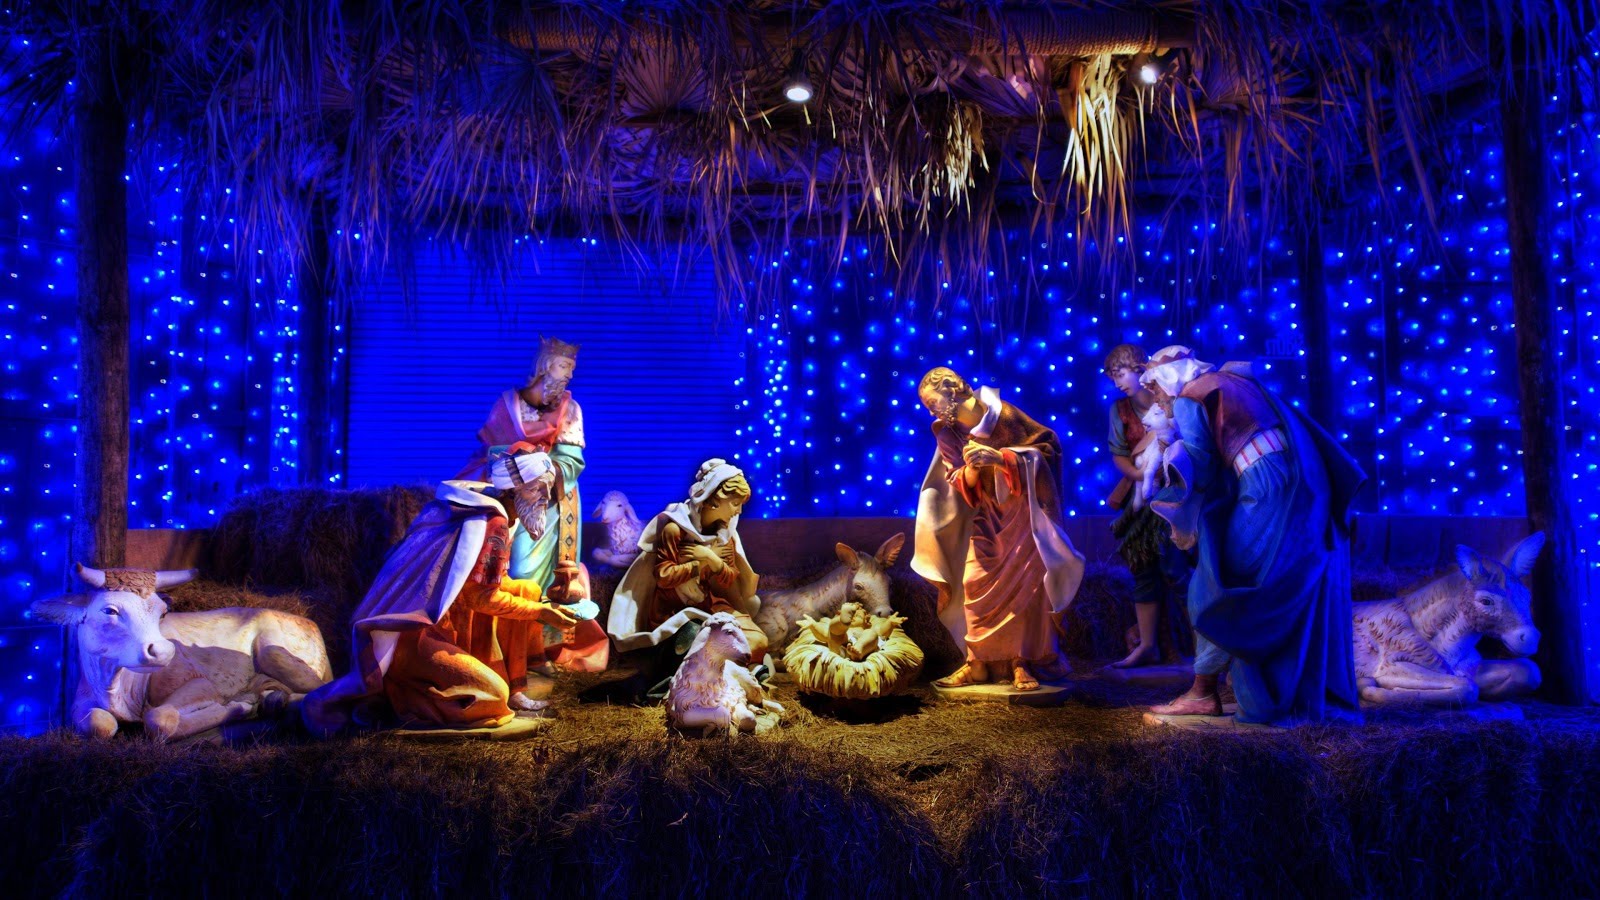 Chúa Nhật Đại Lễ Giáng Sinh là ngày hội trọng đại trong năm, mọi người đều sum vầy bên nhau để chúc tụng và cầu nguyện. Bức ảnh này sẽ đưa bạn đến những giây phút trang trọng và thiêng liêng nhất của đêm Noel.